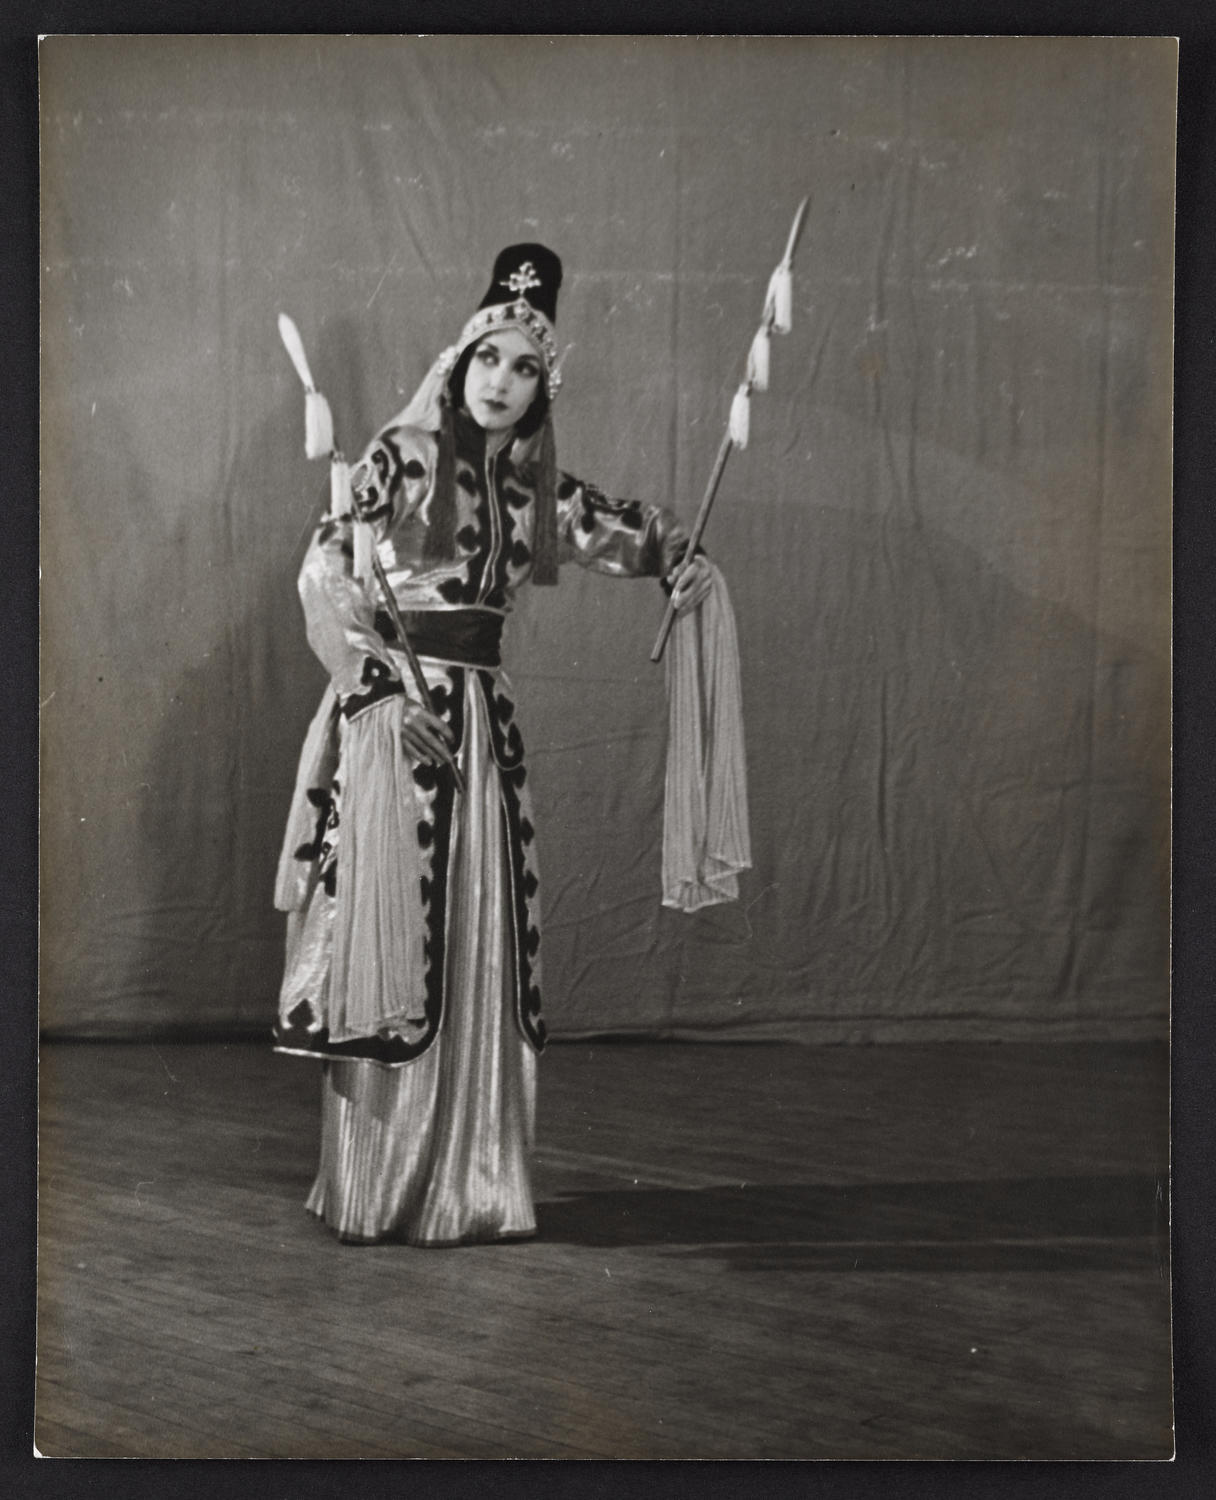 Lisan Kay in "Mulan", c. 1940s